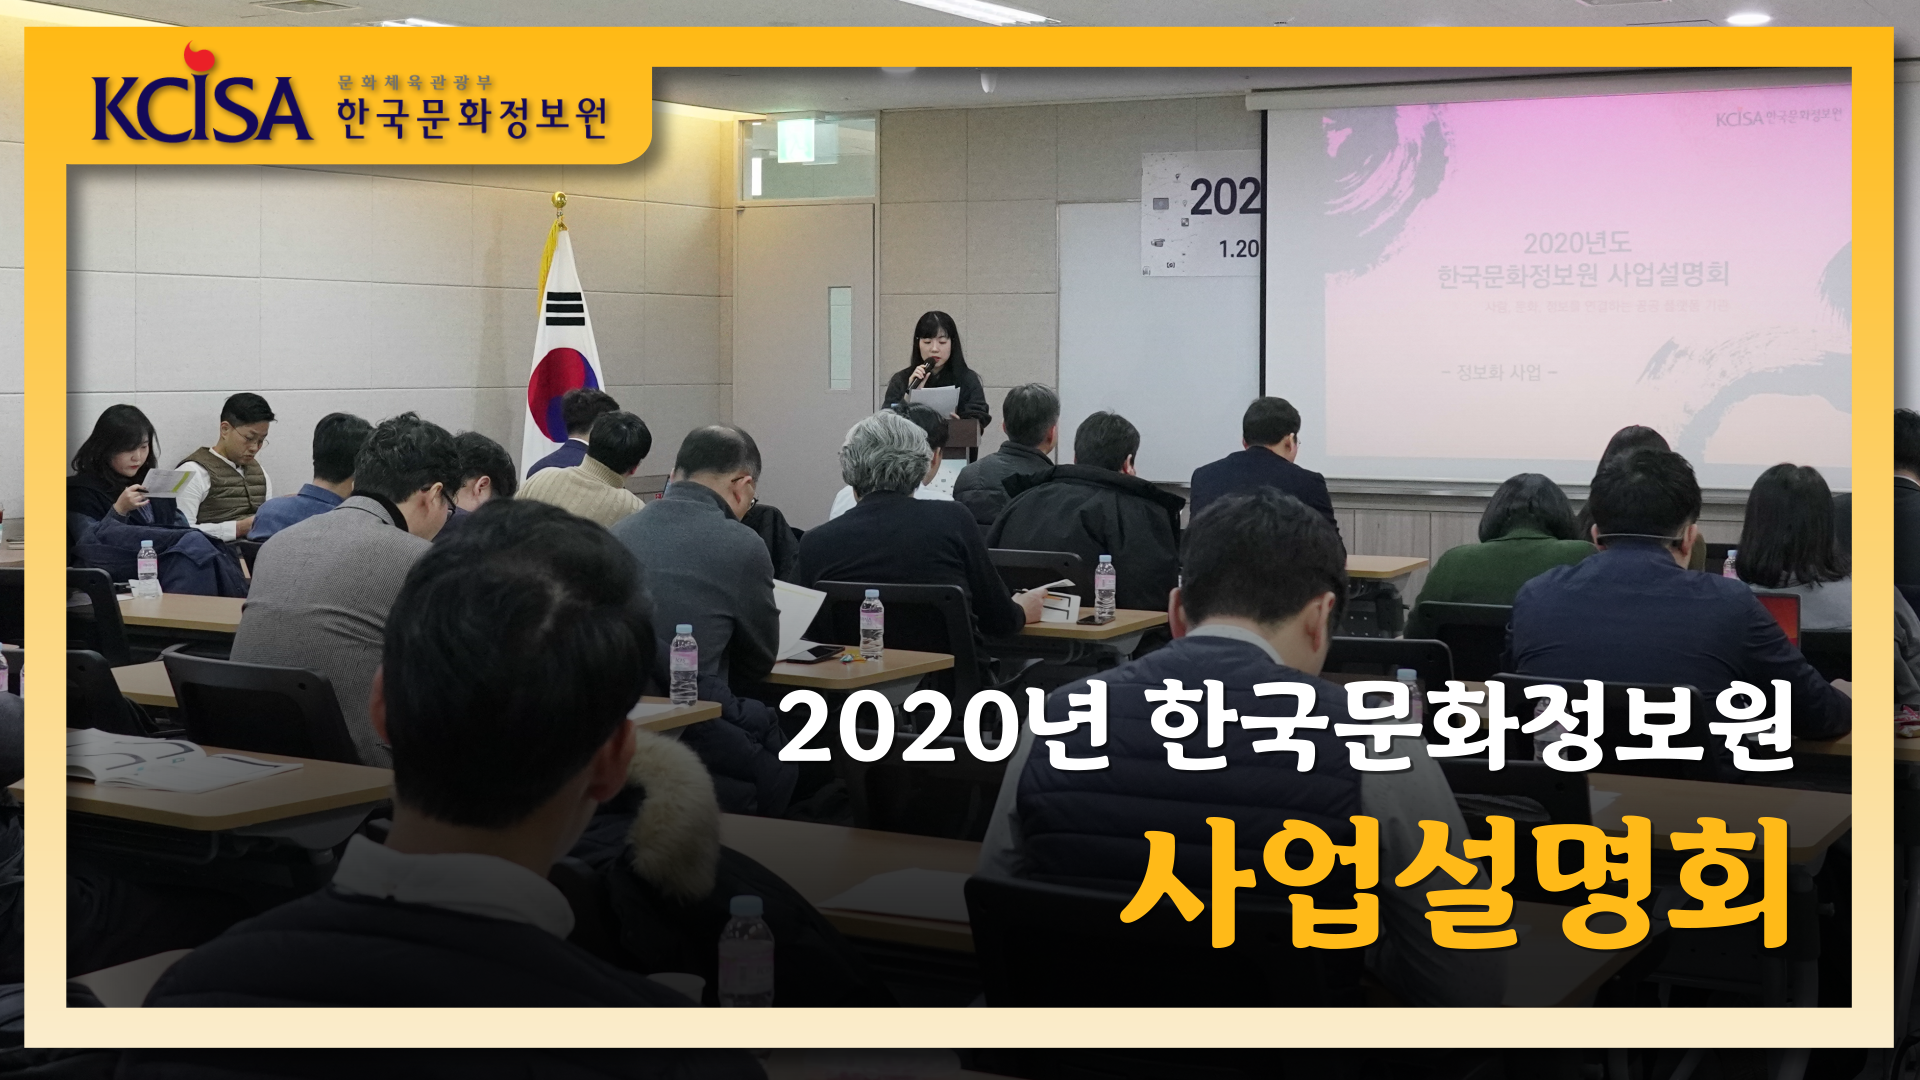 2020년 한국문화정보원 사업설명회 현장 사진